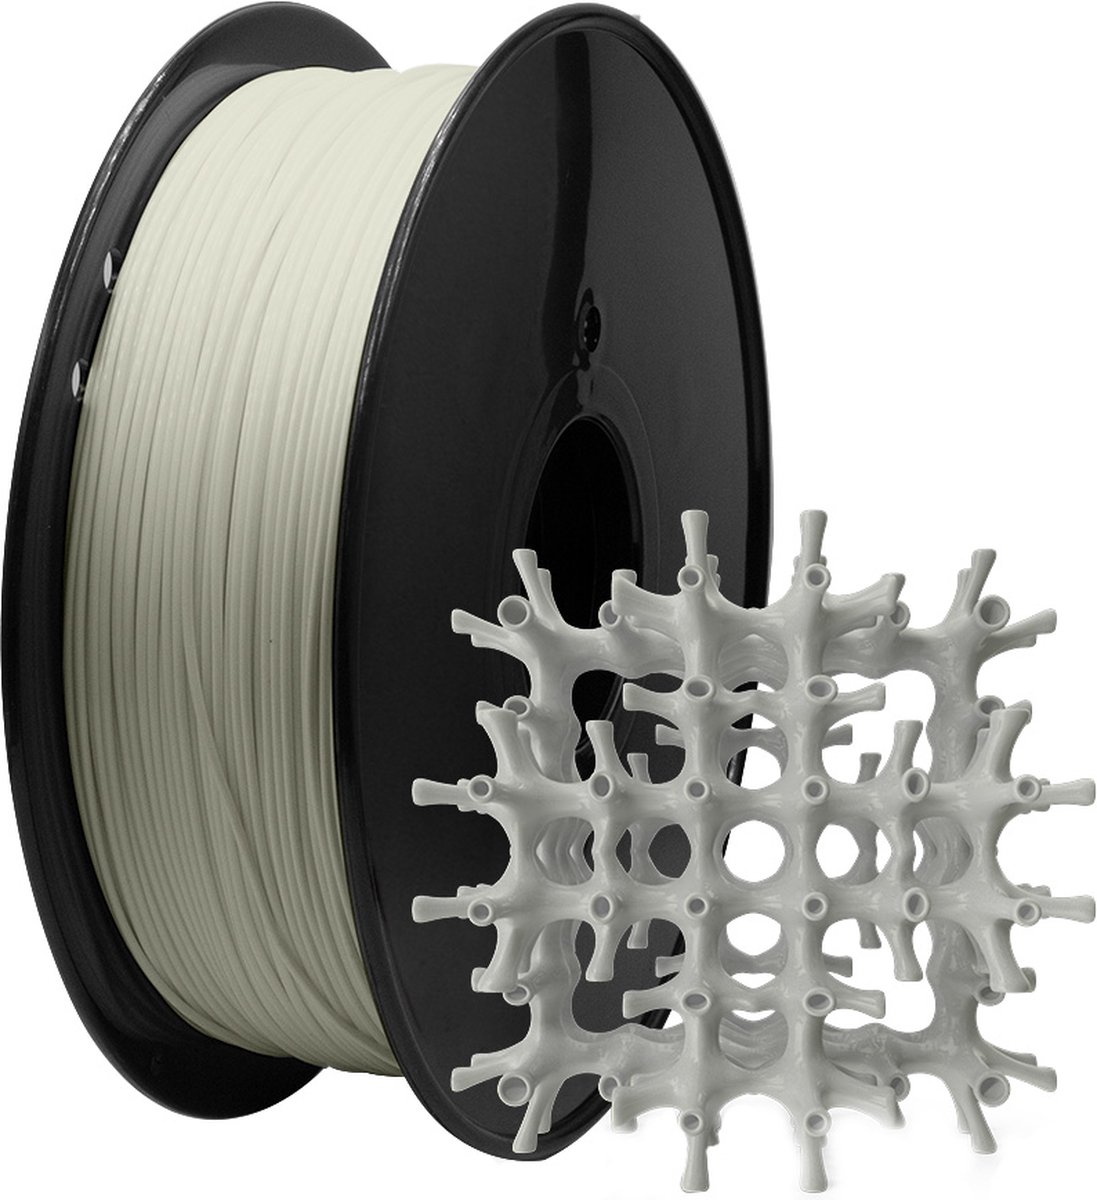 MMOBIEL PLA Filament 3D Printer 1.75mm - Lengte 330m - 200 x 200mm - 1kg Spoel - Transparant